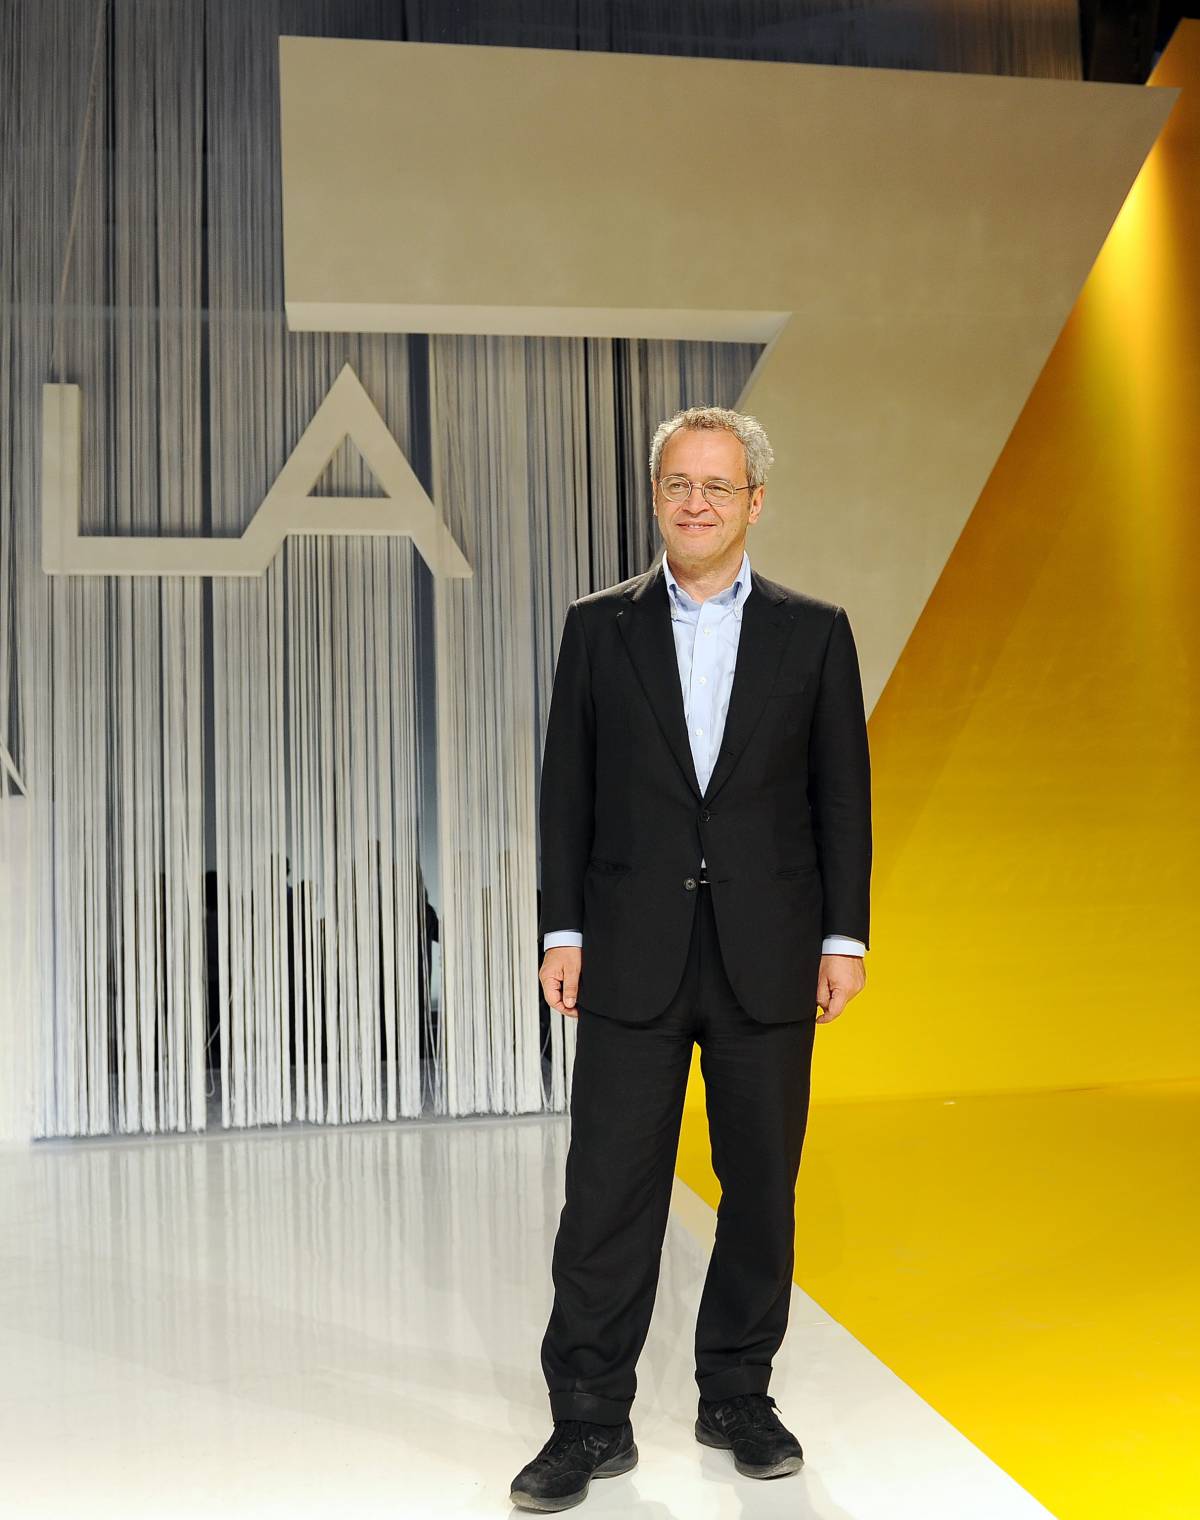 Tg La7, Enrico Mentana ritira le sue dimissioni: "Decisione doverosa"